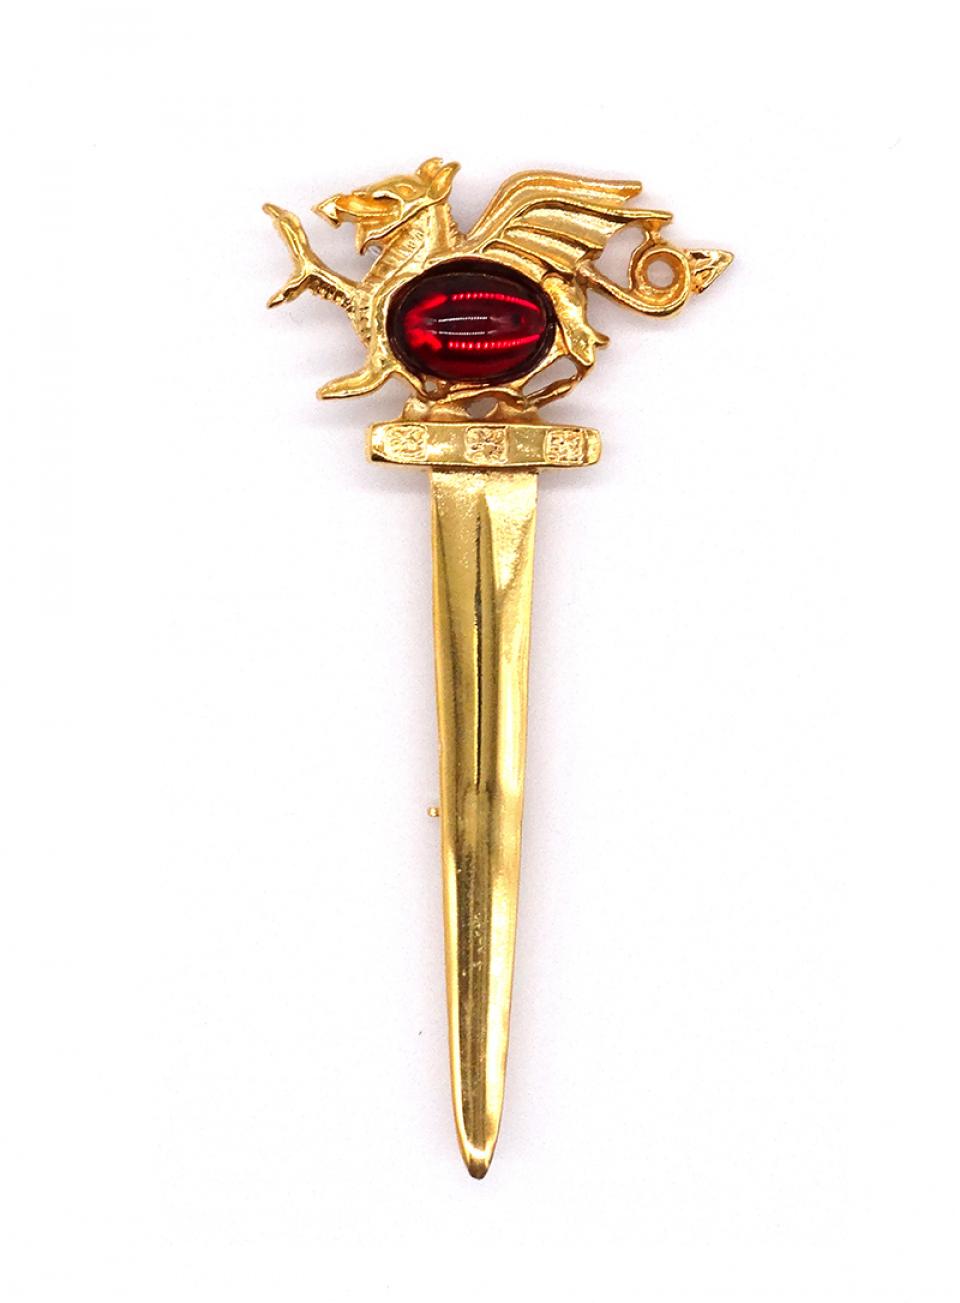 Gold Dragon 'Eye' Kilt Pin